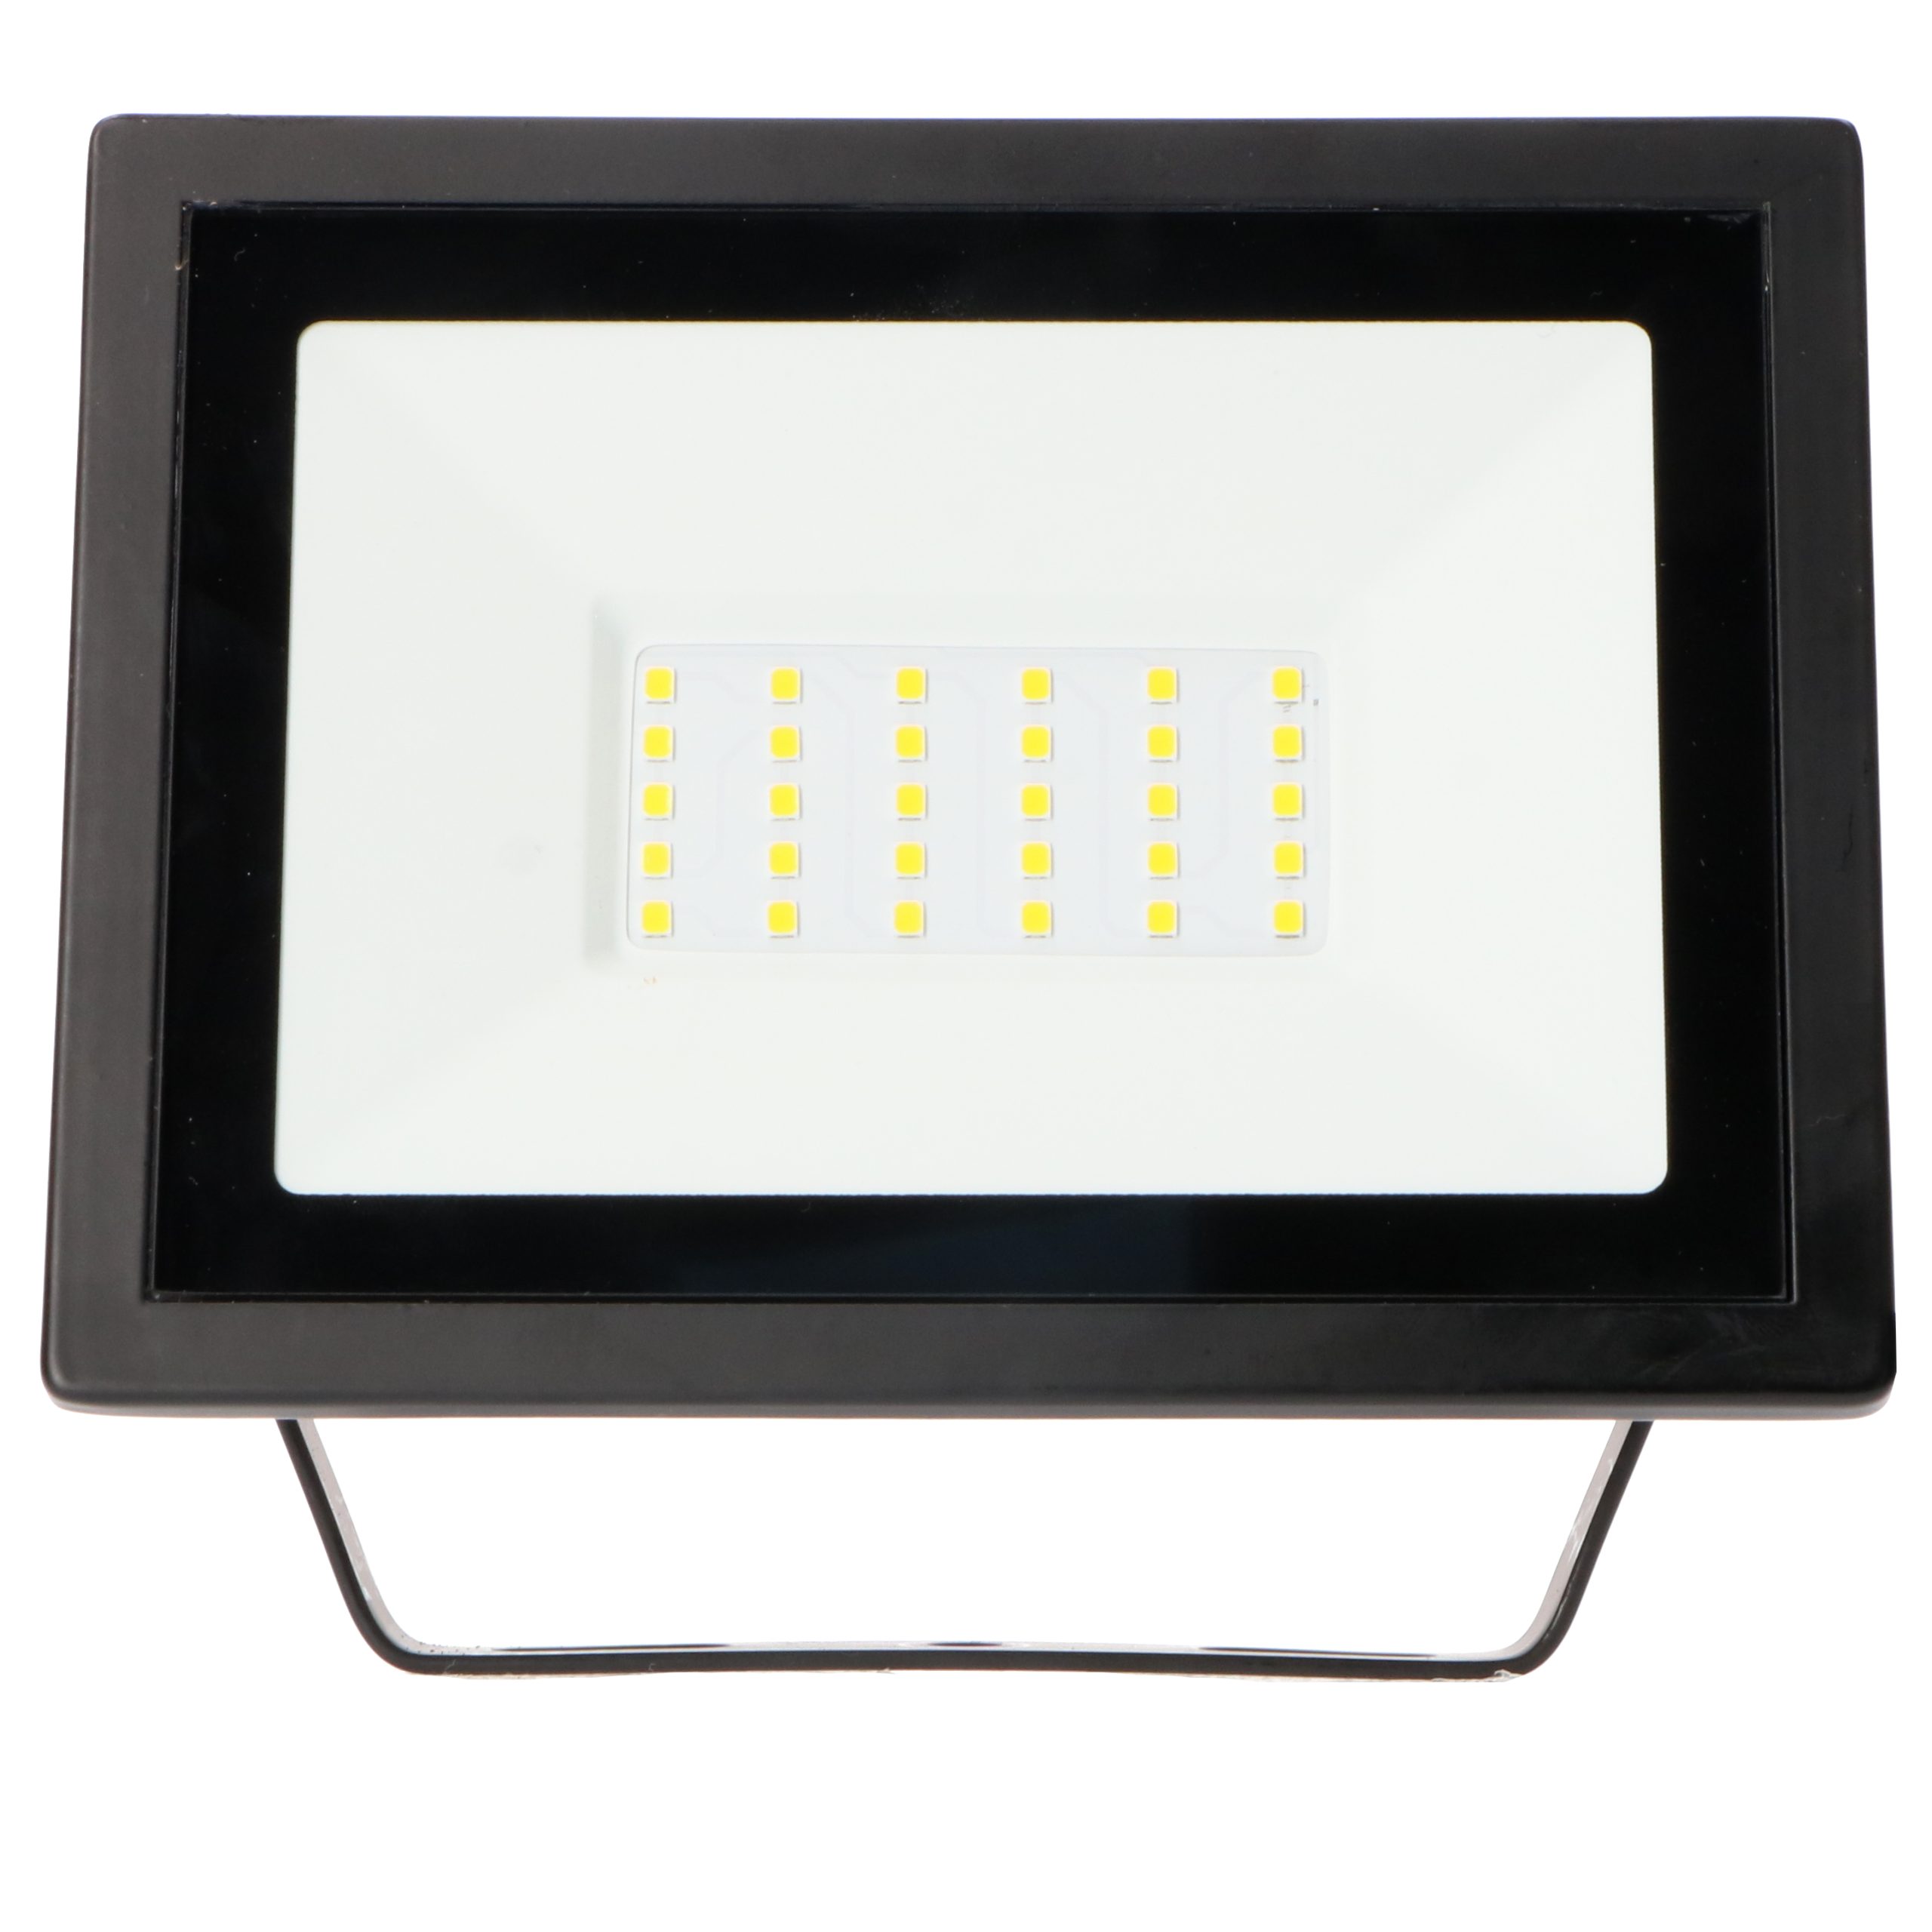 LED's work LED Arbeitsleuchte 1,2m mit 2,5 Zuleitung 2x Stativ LED-Arbeitsstrahler, 0310654 neutralweiß 30W LED, m IP54